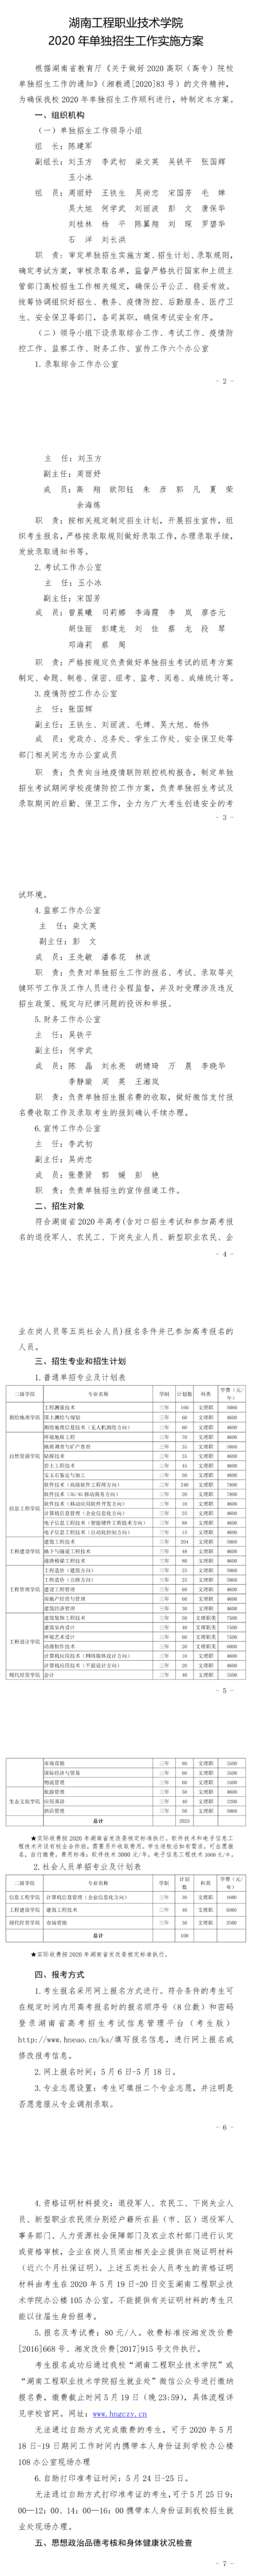 2020湖南工程职业技术学院单招简章